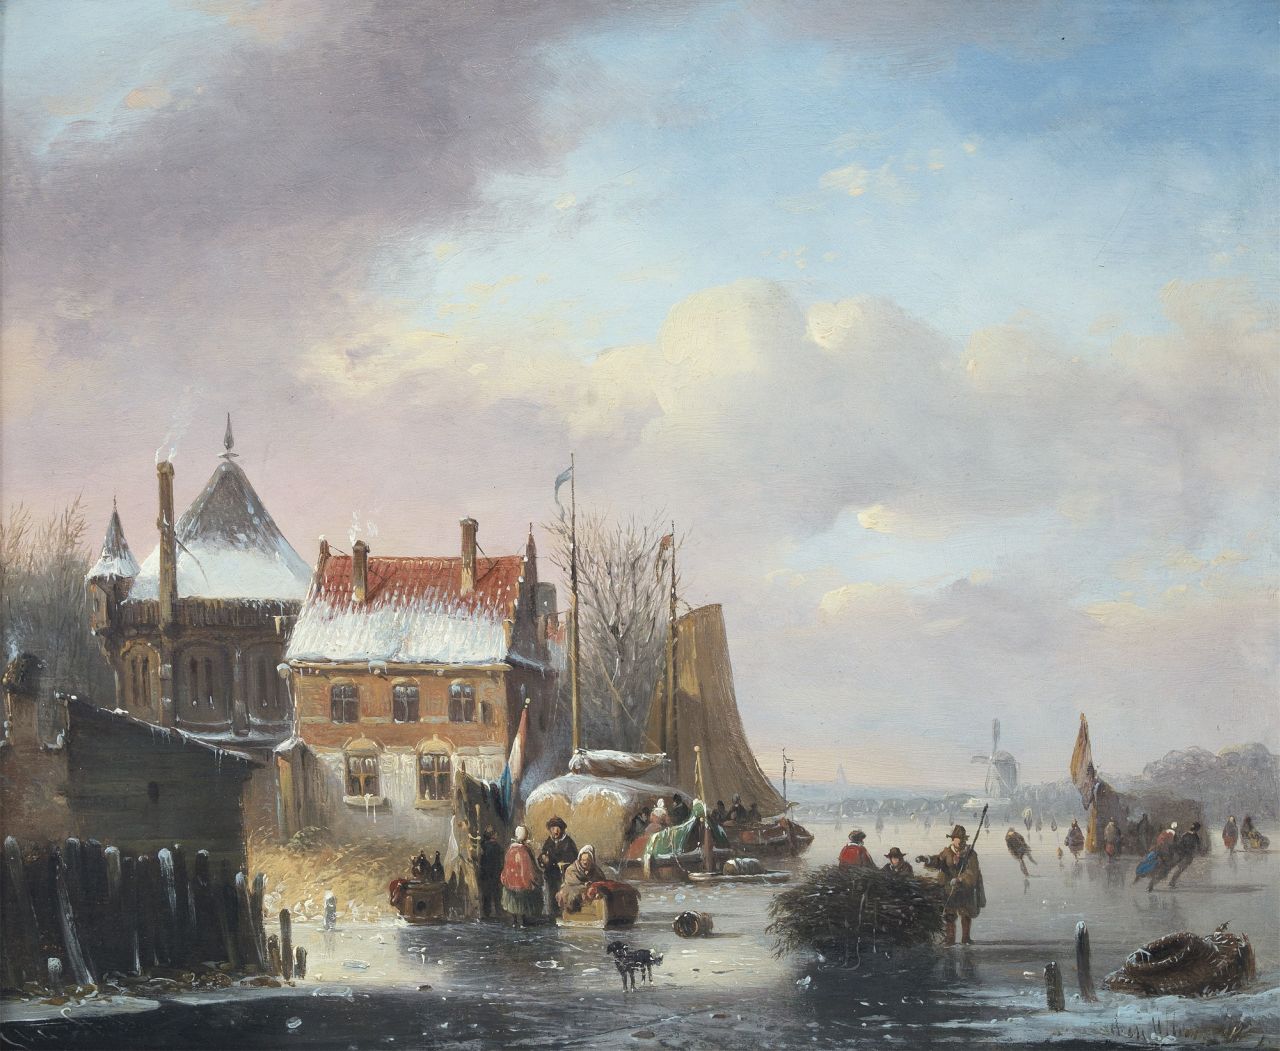 Stok J. van der | Jacobus van der Stok, Schaatsvertier bij een stadje met molen in de verte, olieverf op paneel 23,2 x 27,9 cm, gesigneerd linksonder